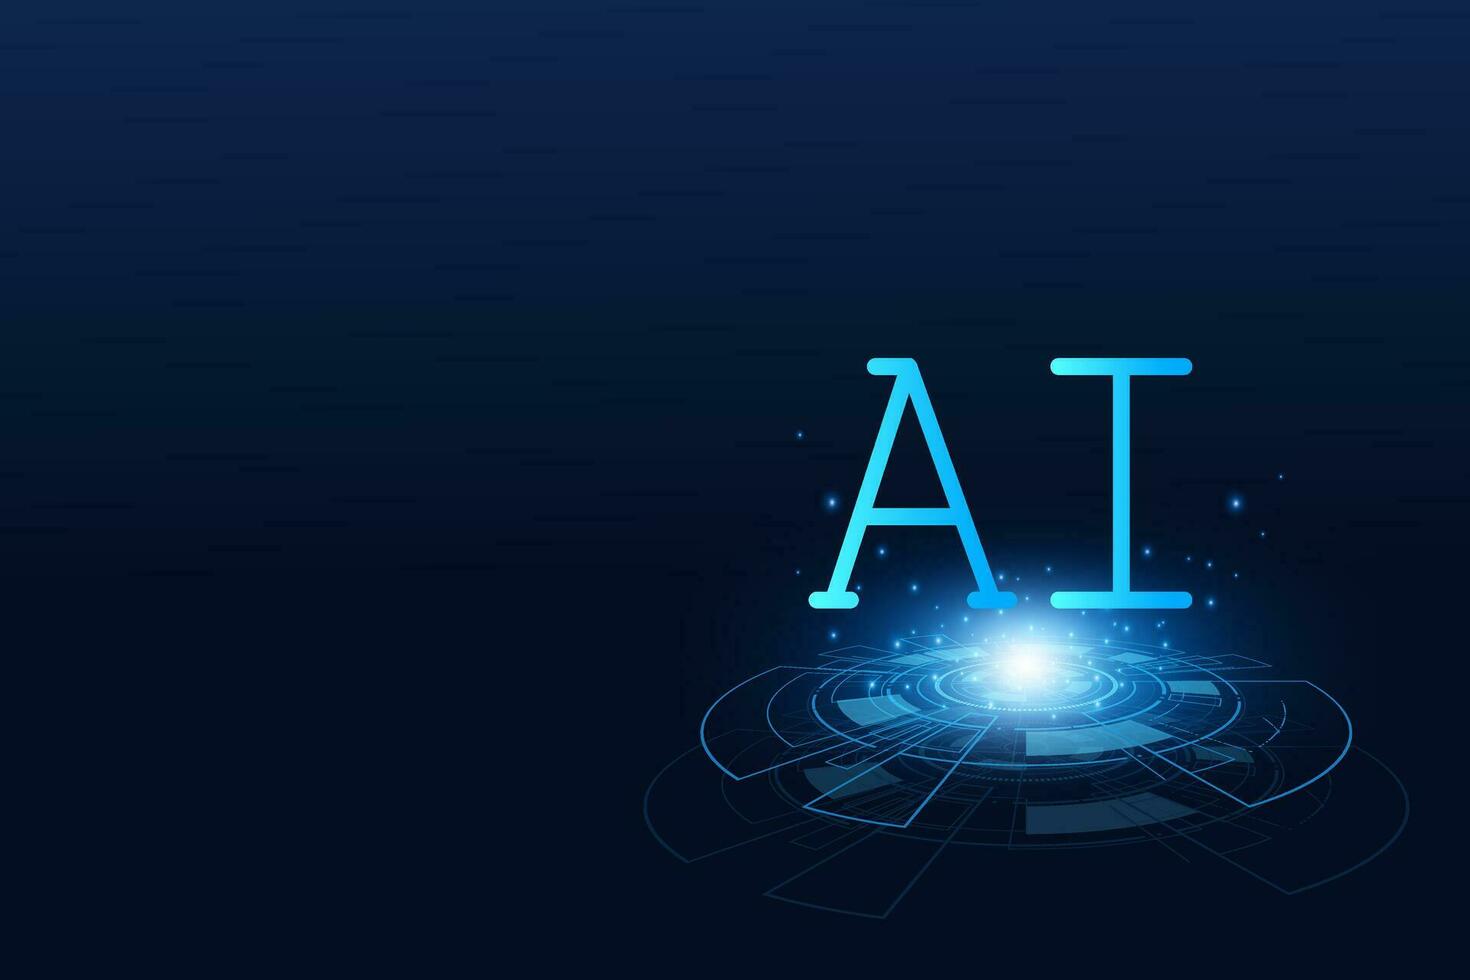 Künstliche Intelligenz, AI-Chipsatz auf Platine, futuristisches Technologiekonzept vektor